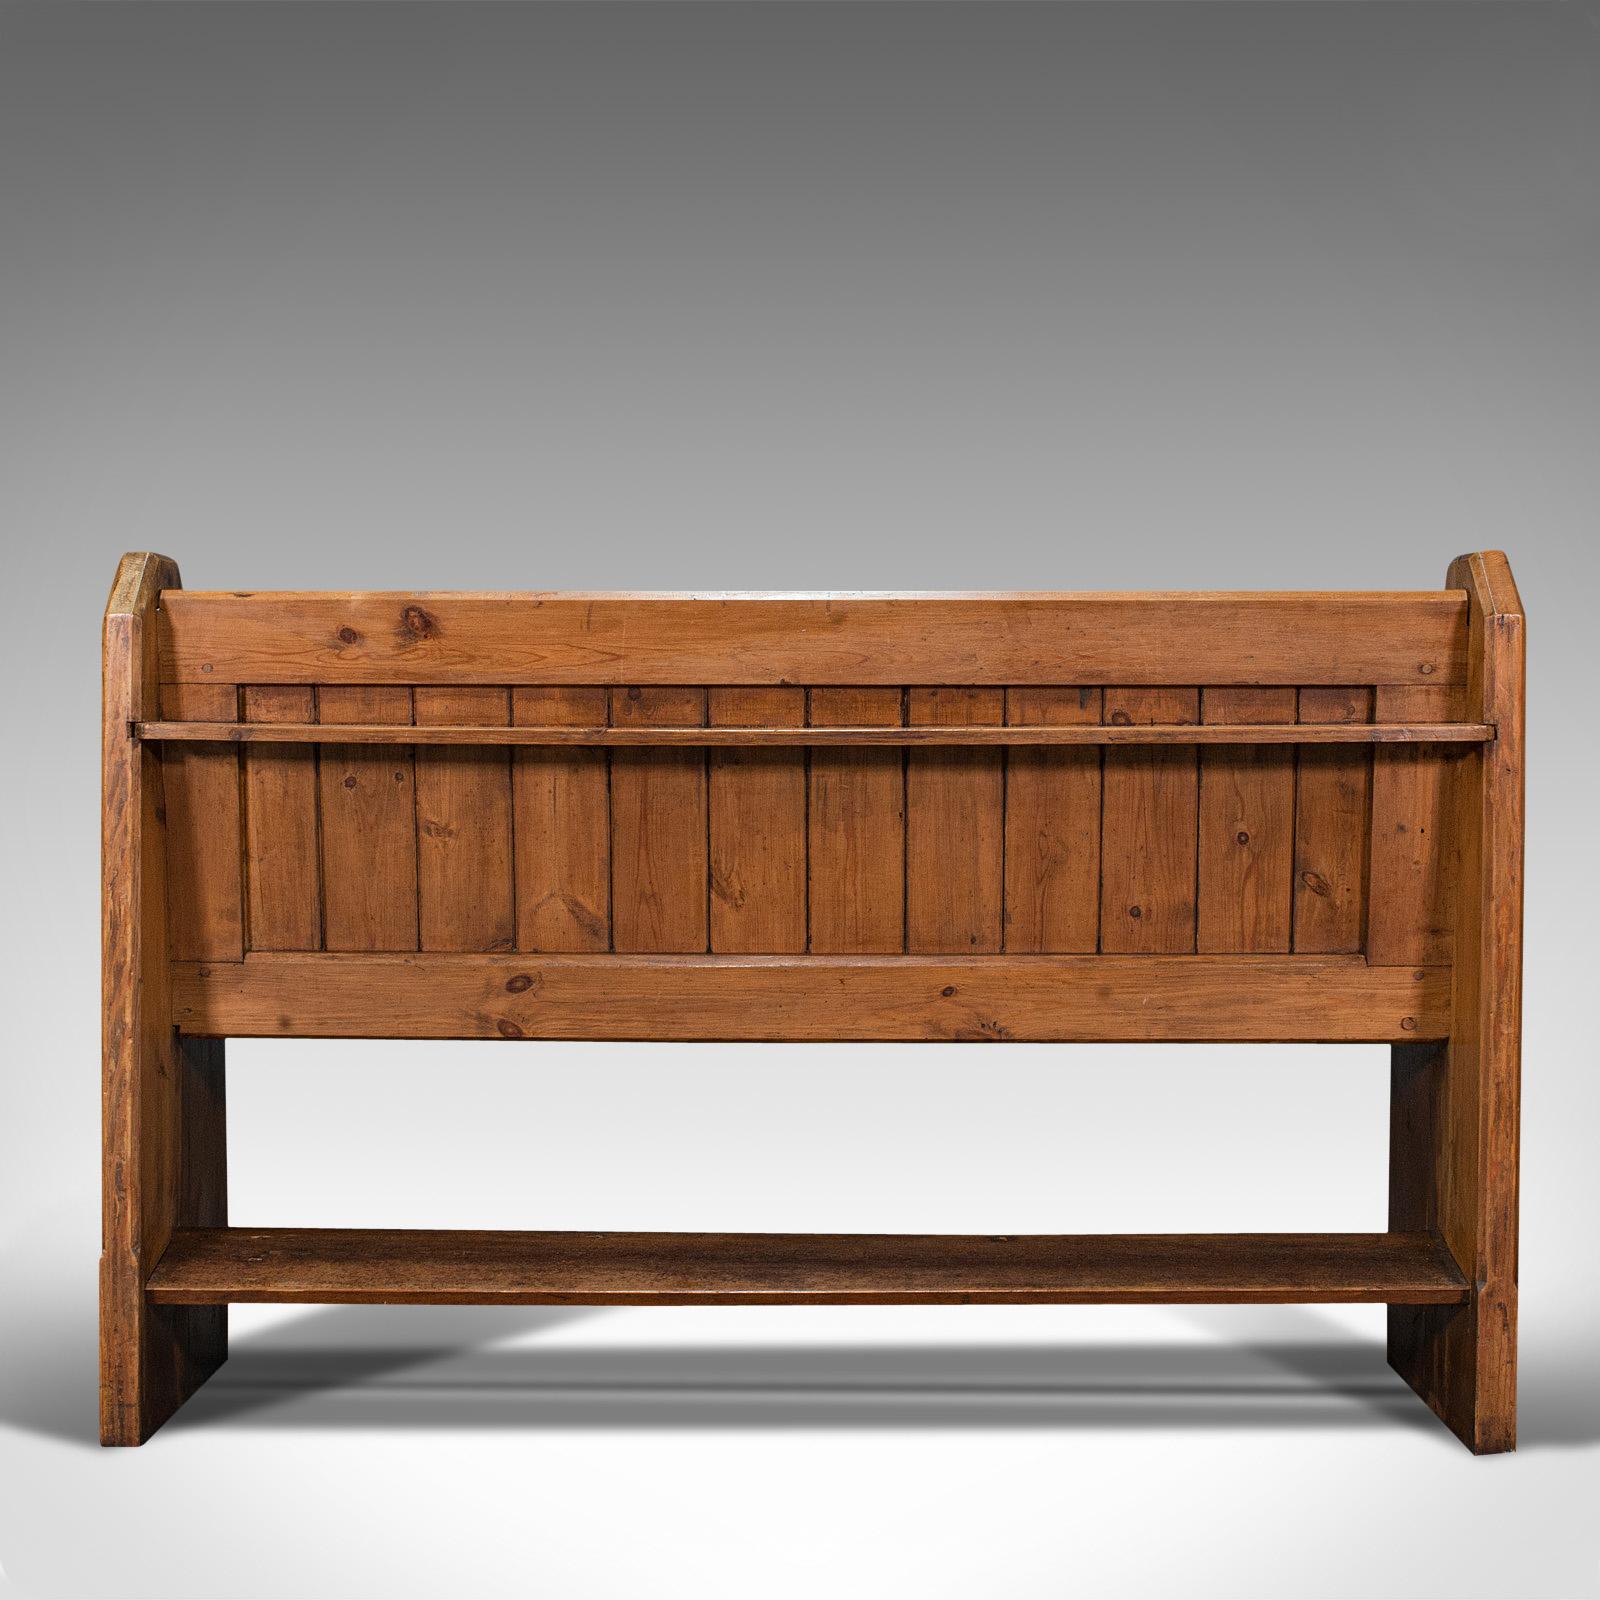 British Antique Bench Seat, English, Pine, Pew, Ecclesiastic Taste, Victorian, C.1900